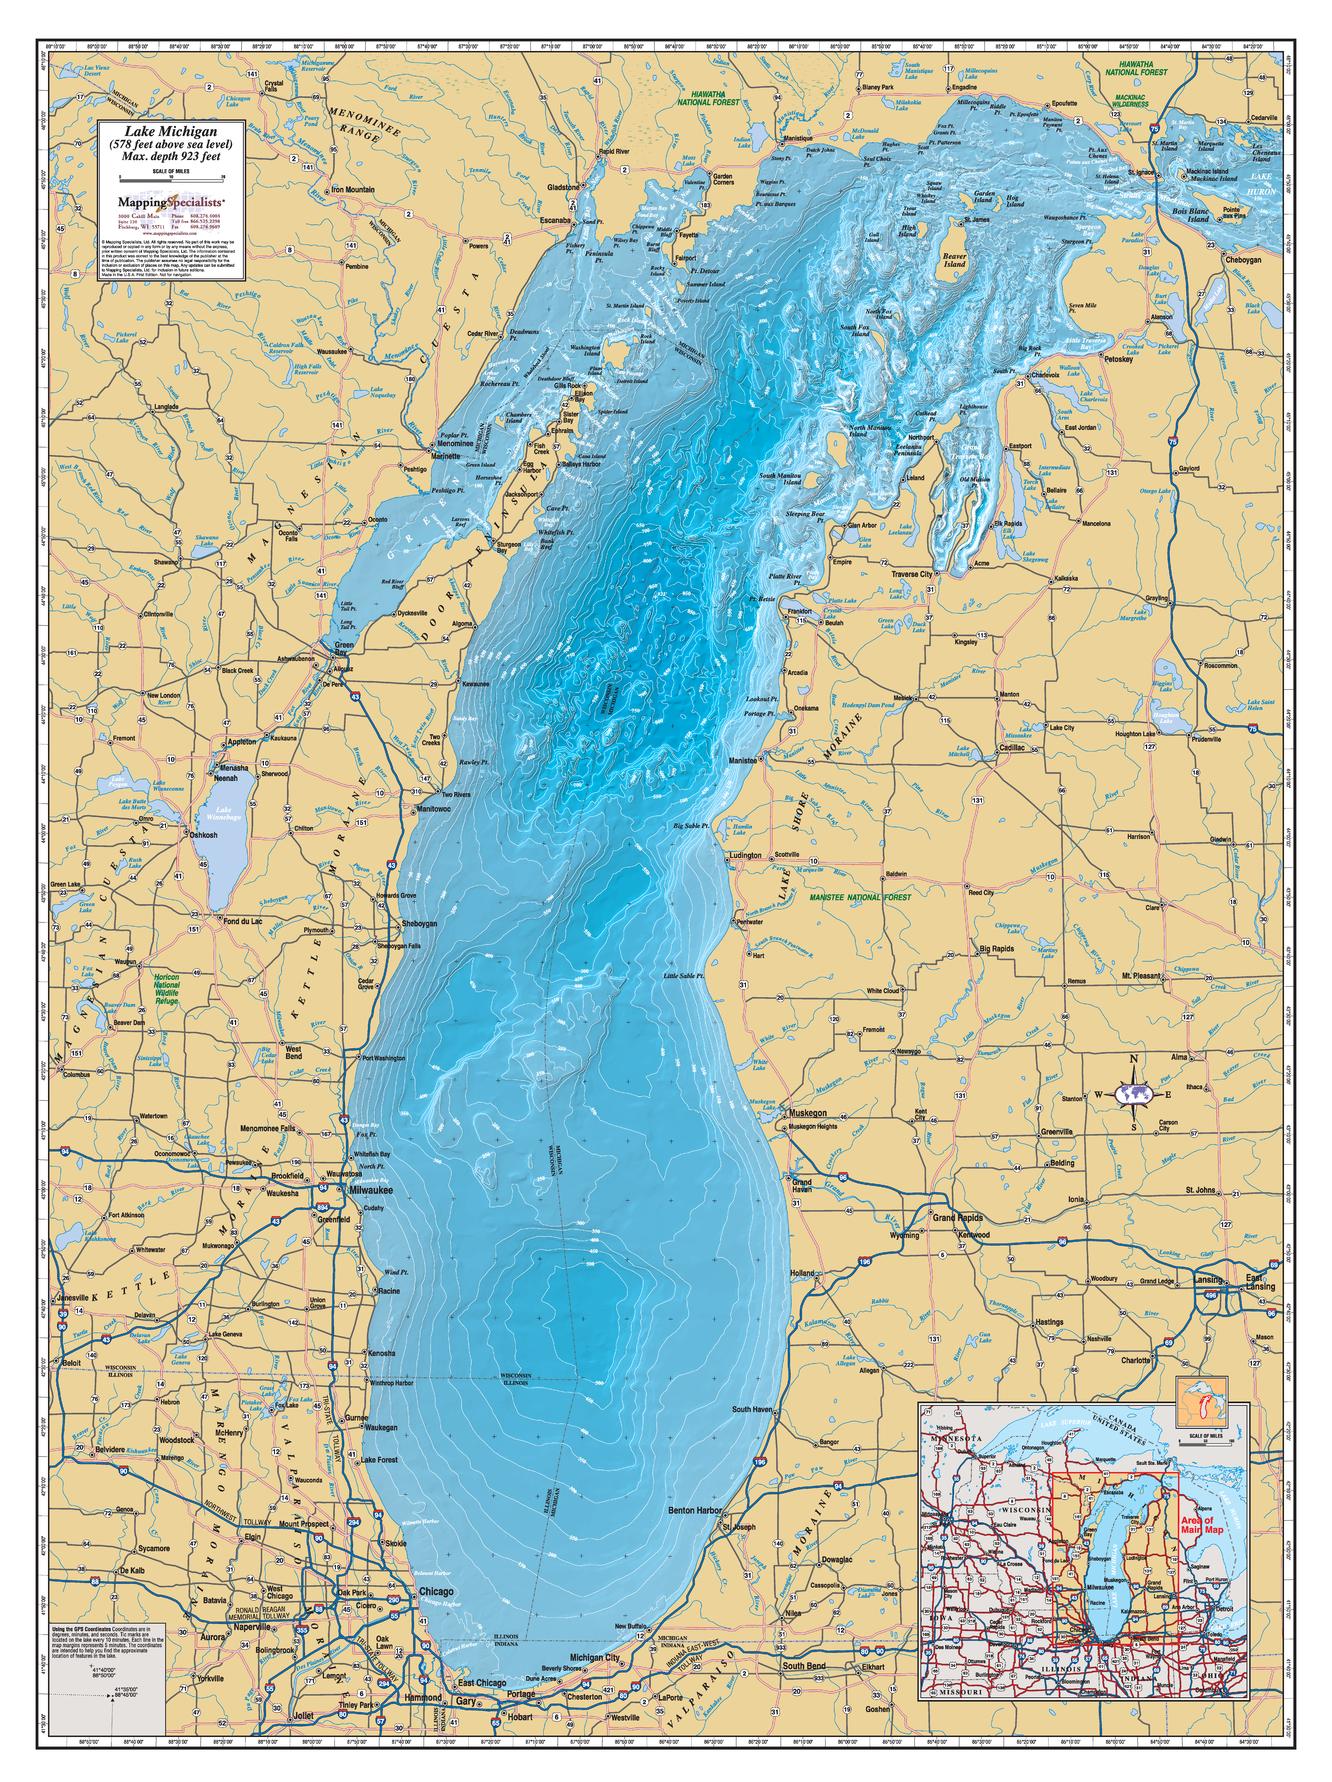 Michigan Lake Maps & Atlases